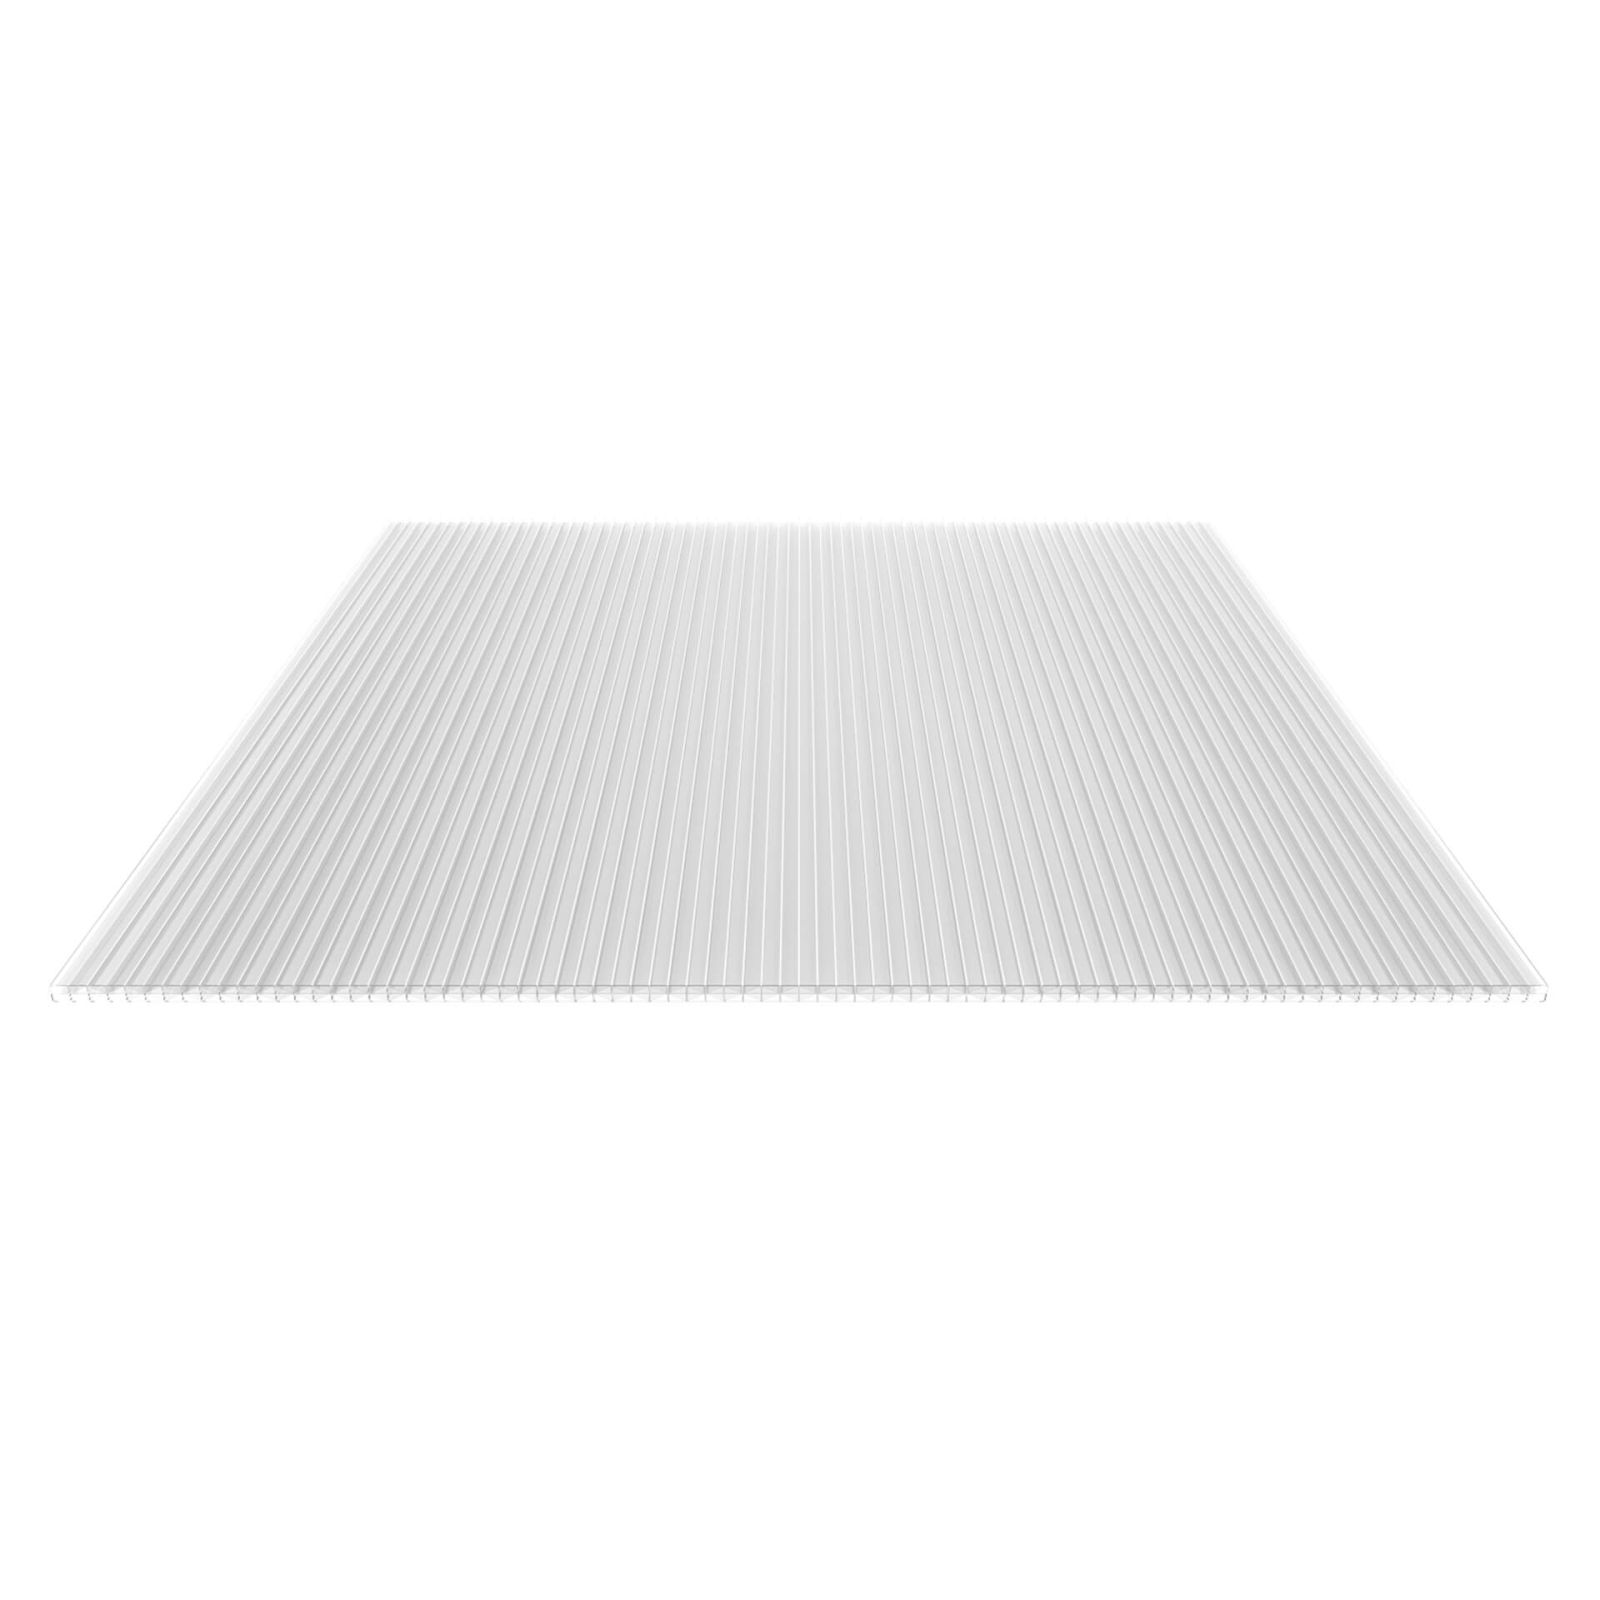 Polycarbonat Stegplatte | 16 mm | Profil Mendiger | Sparpaket | Plattenbreite 980 mm | Klar | Extra stark | Breite 3,09 m | Länge 2,00 m #5